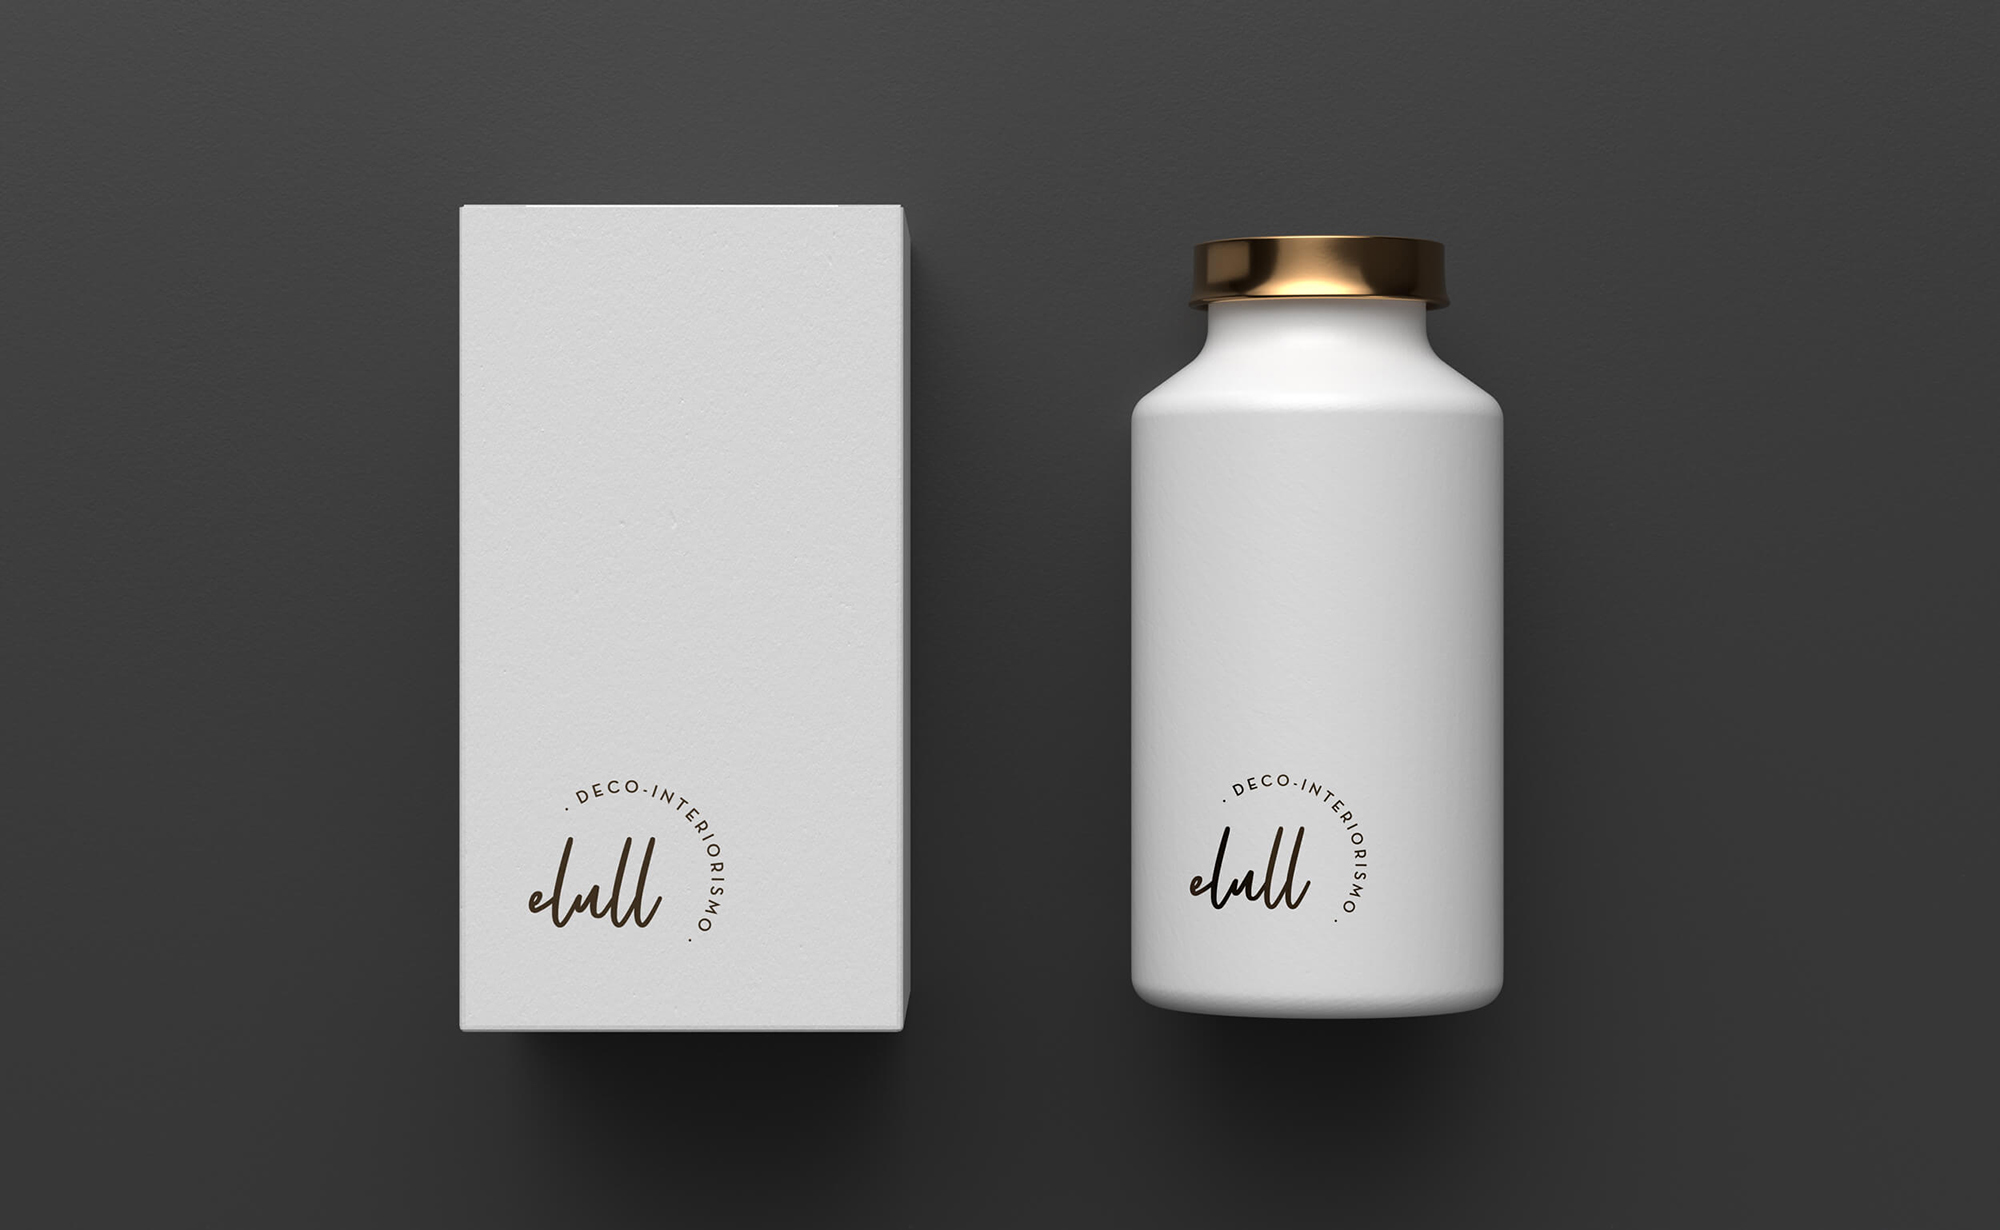 Diseño y desarrollo de identidad visual corporativa para Elull Deco-interiorismo. Packaging botella.